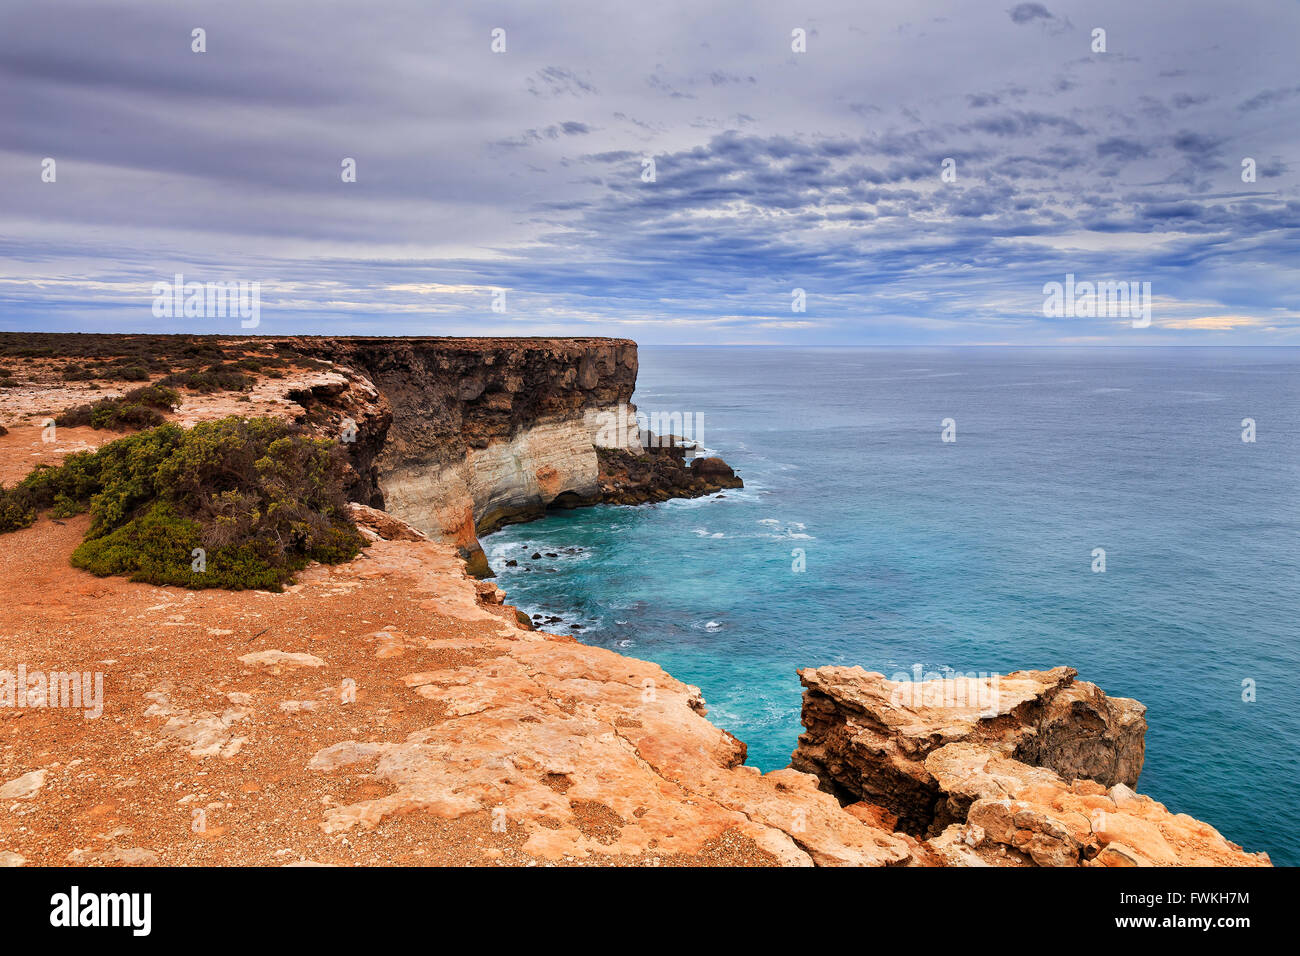 Bend de rochers calcaires géologiques dangereuses Platon Nullarbor vers Grande Baie australienne en Australie du Sud sur l'apparence d'un dire. Banque D'Images